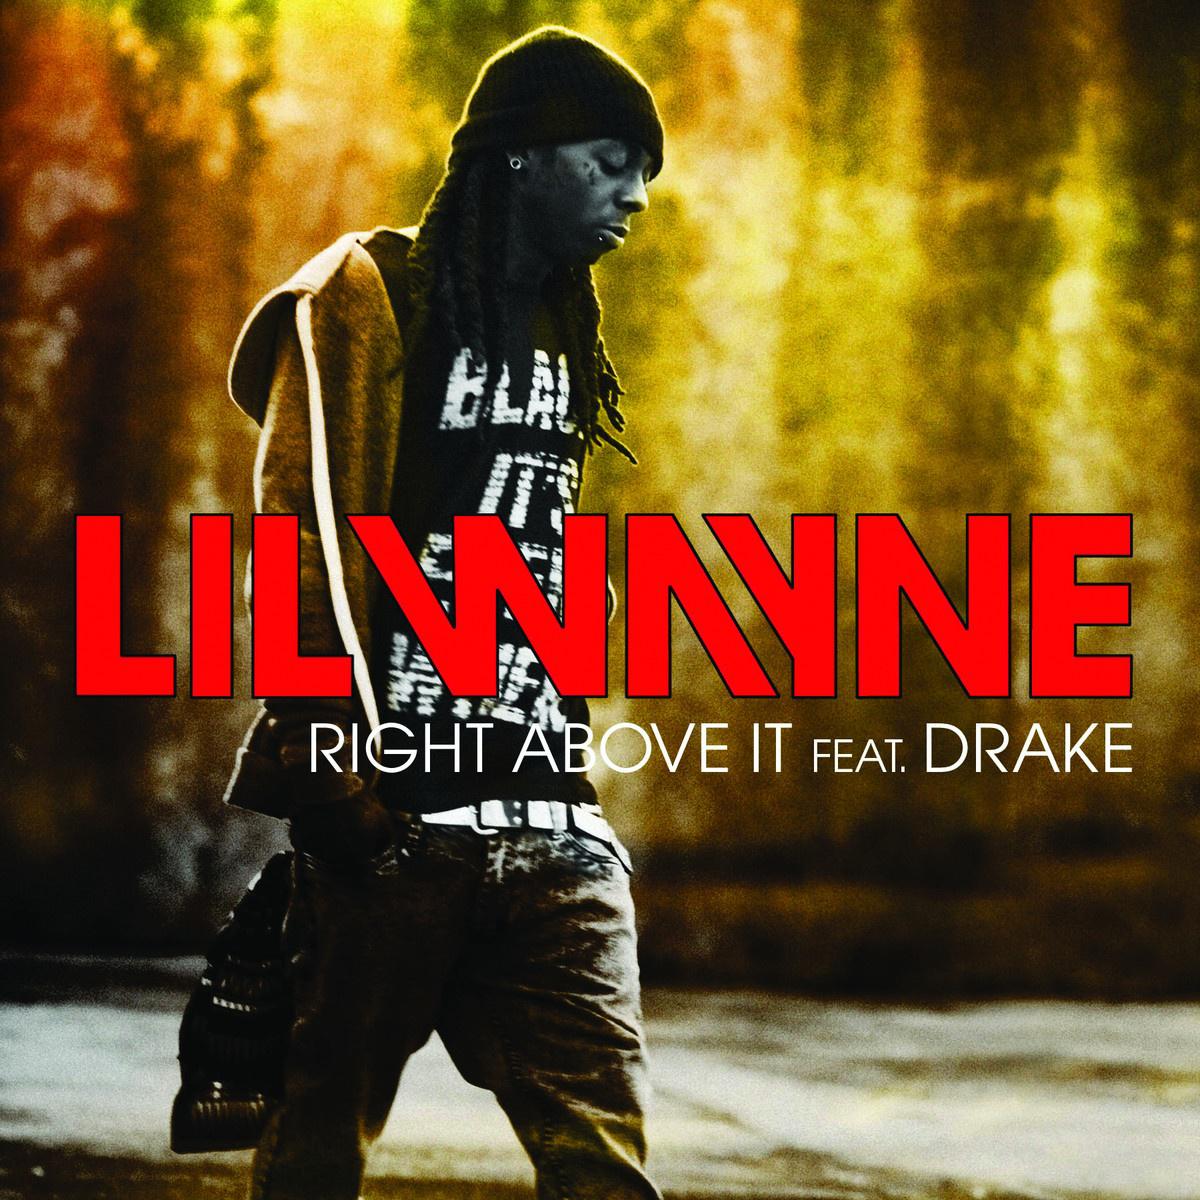 Lil Wayne. 播 放 收 藏 分 享 下 载. 4. 歌 手. 发 行 时 间.2010-08-29. 